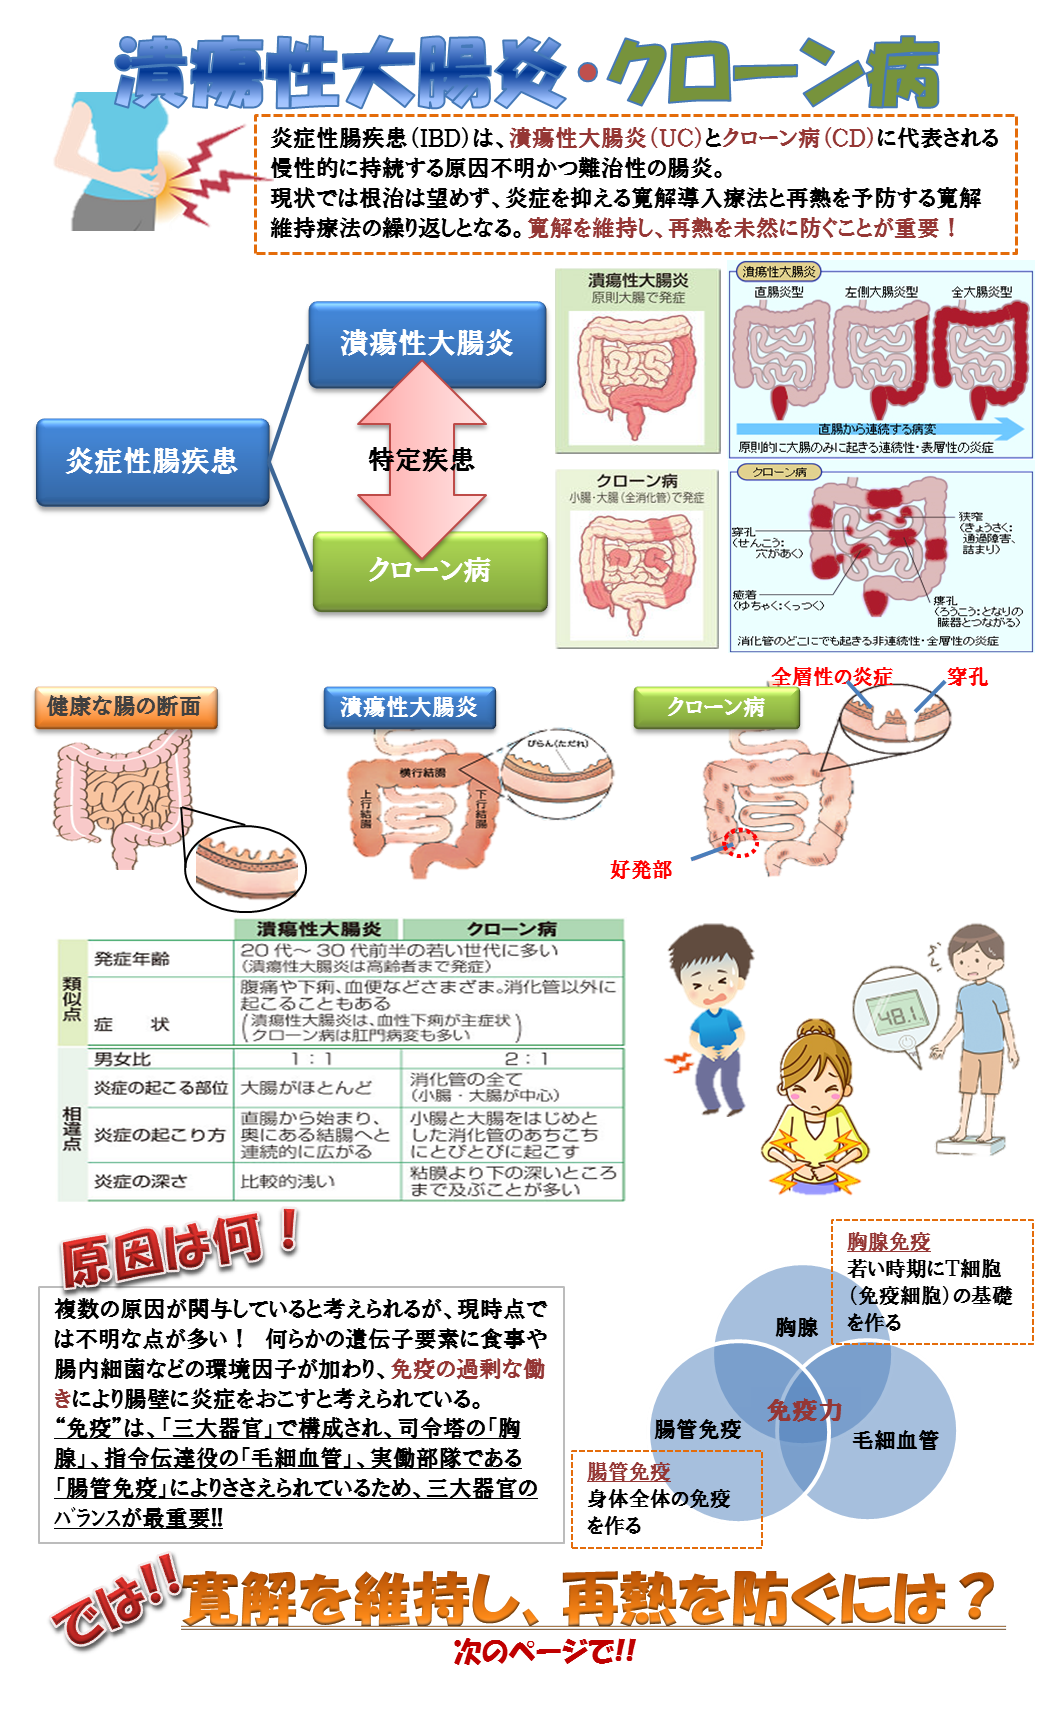 潰瘍性大腸炎･ｸﾛｰﾝ病1